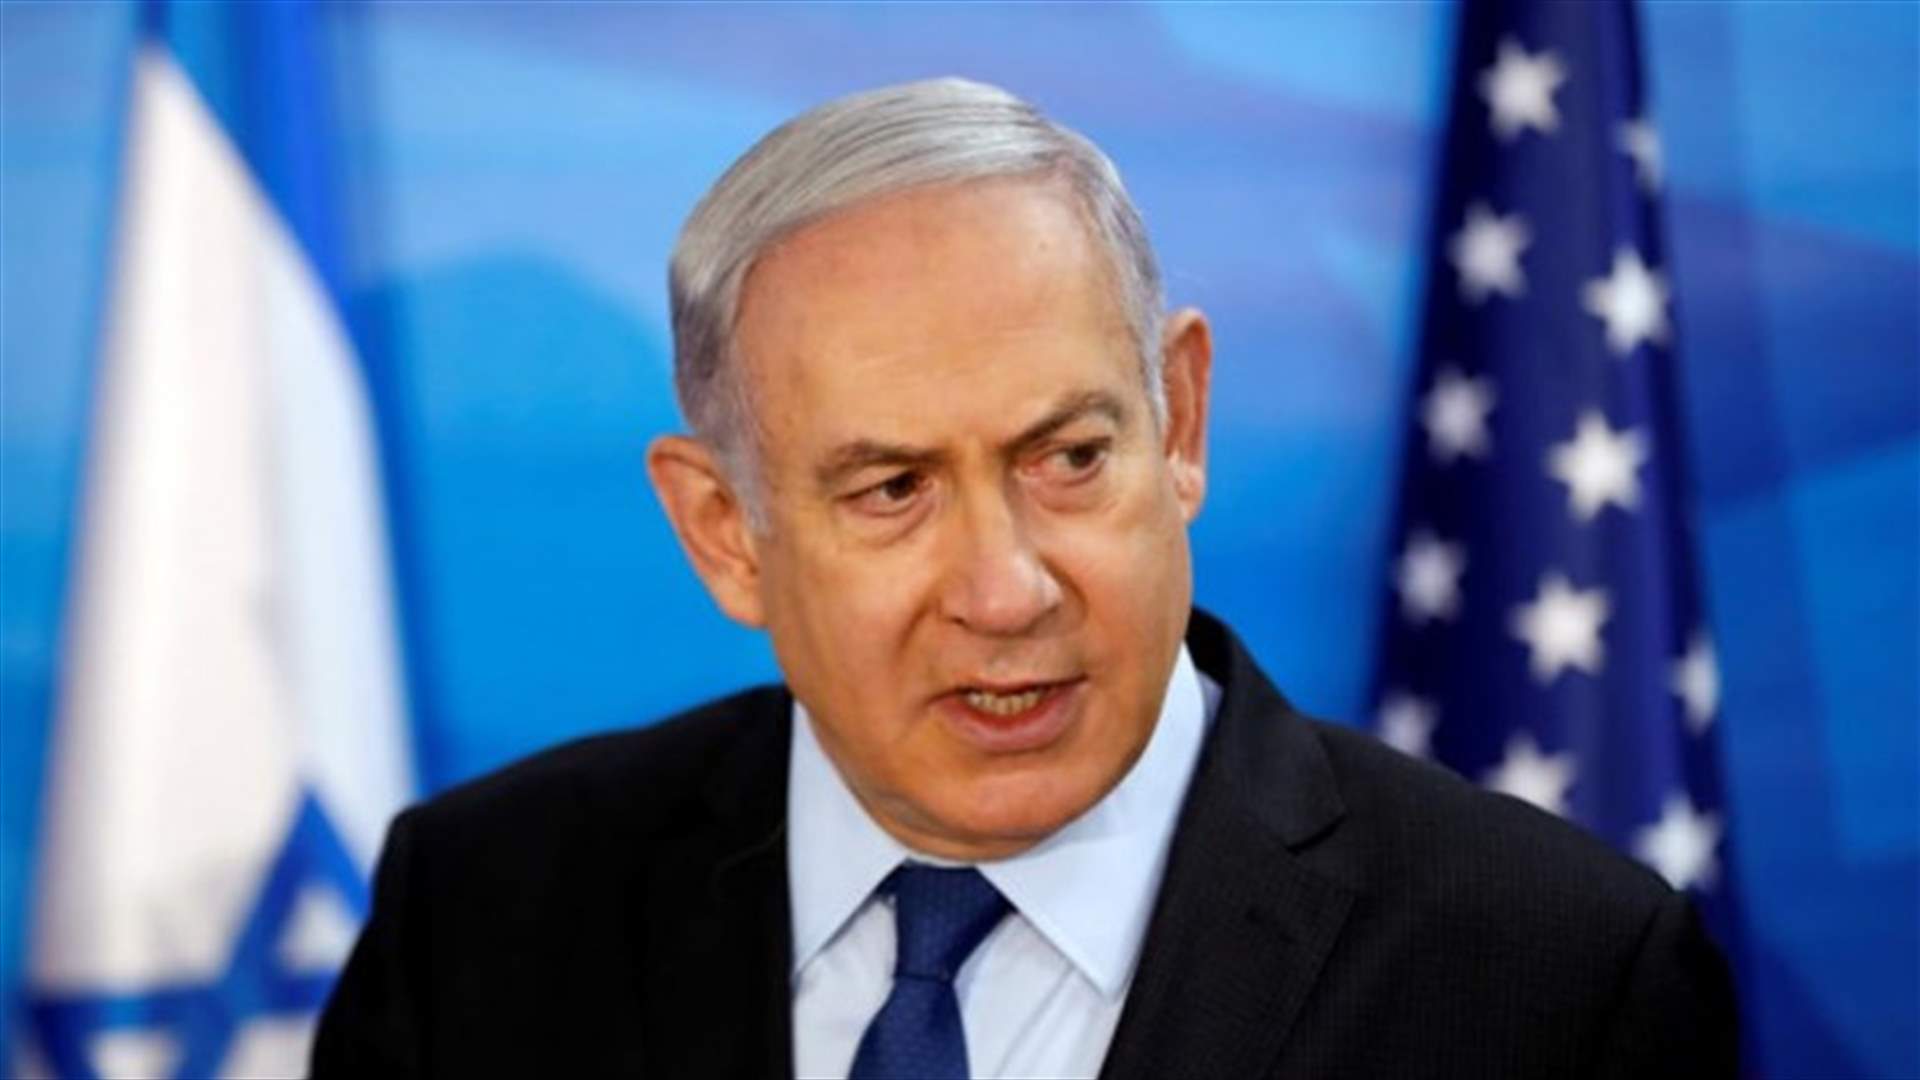 Netanyahu announces plans for 3,000 new settler homes near East Jerusalem